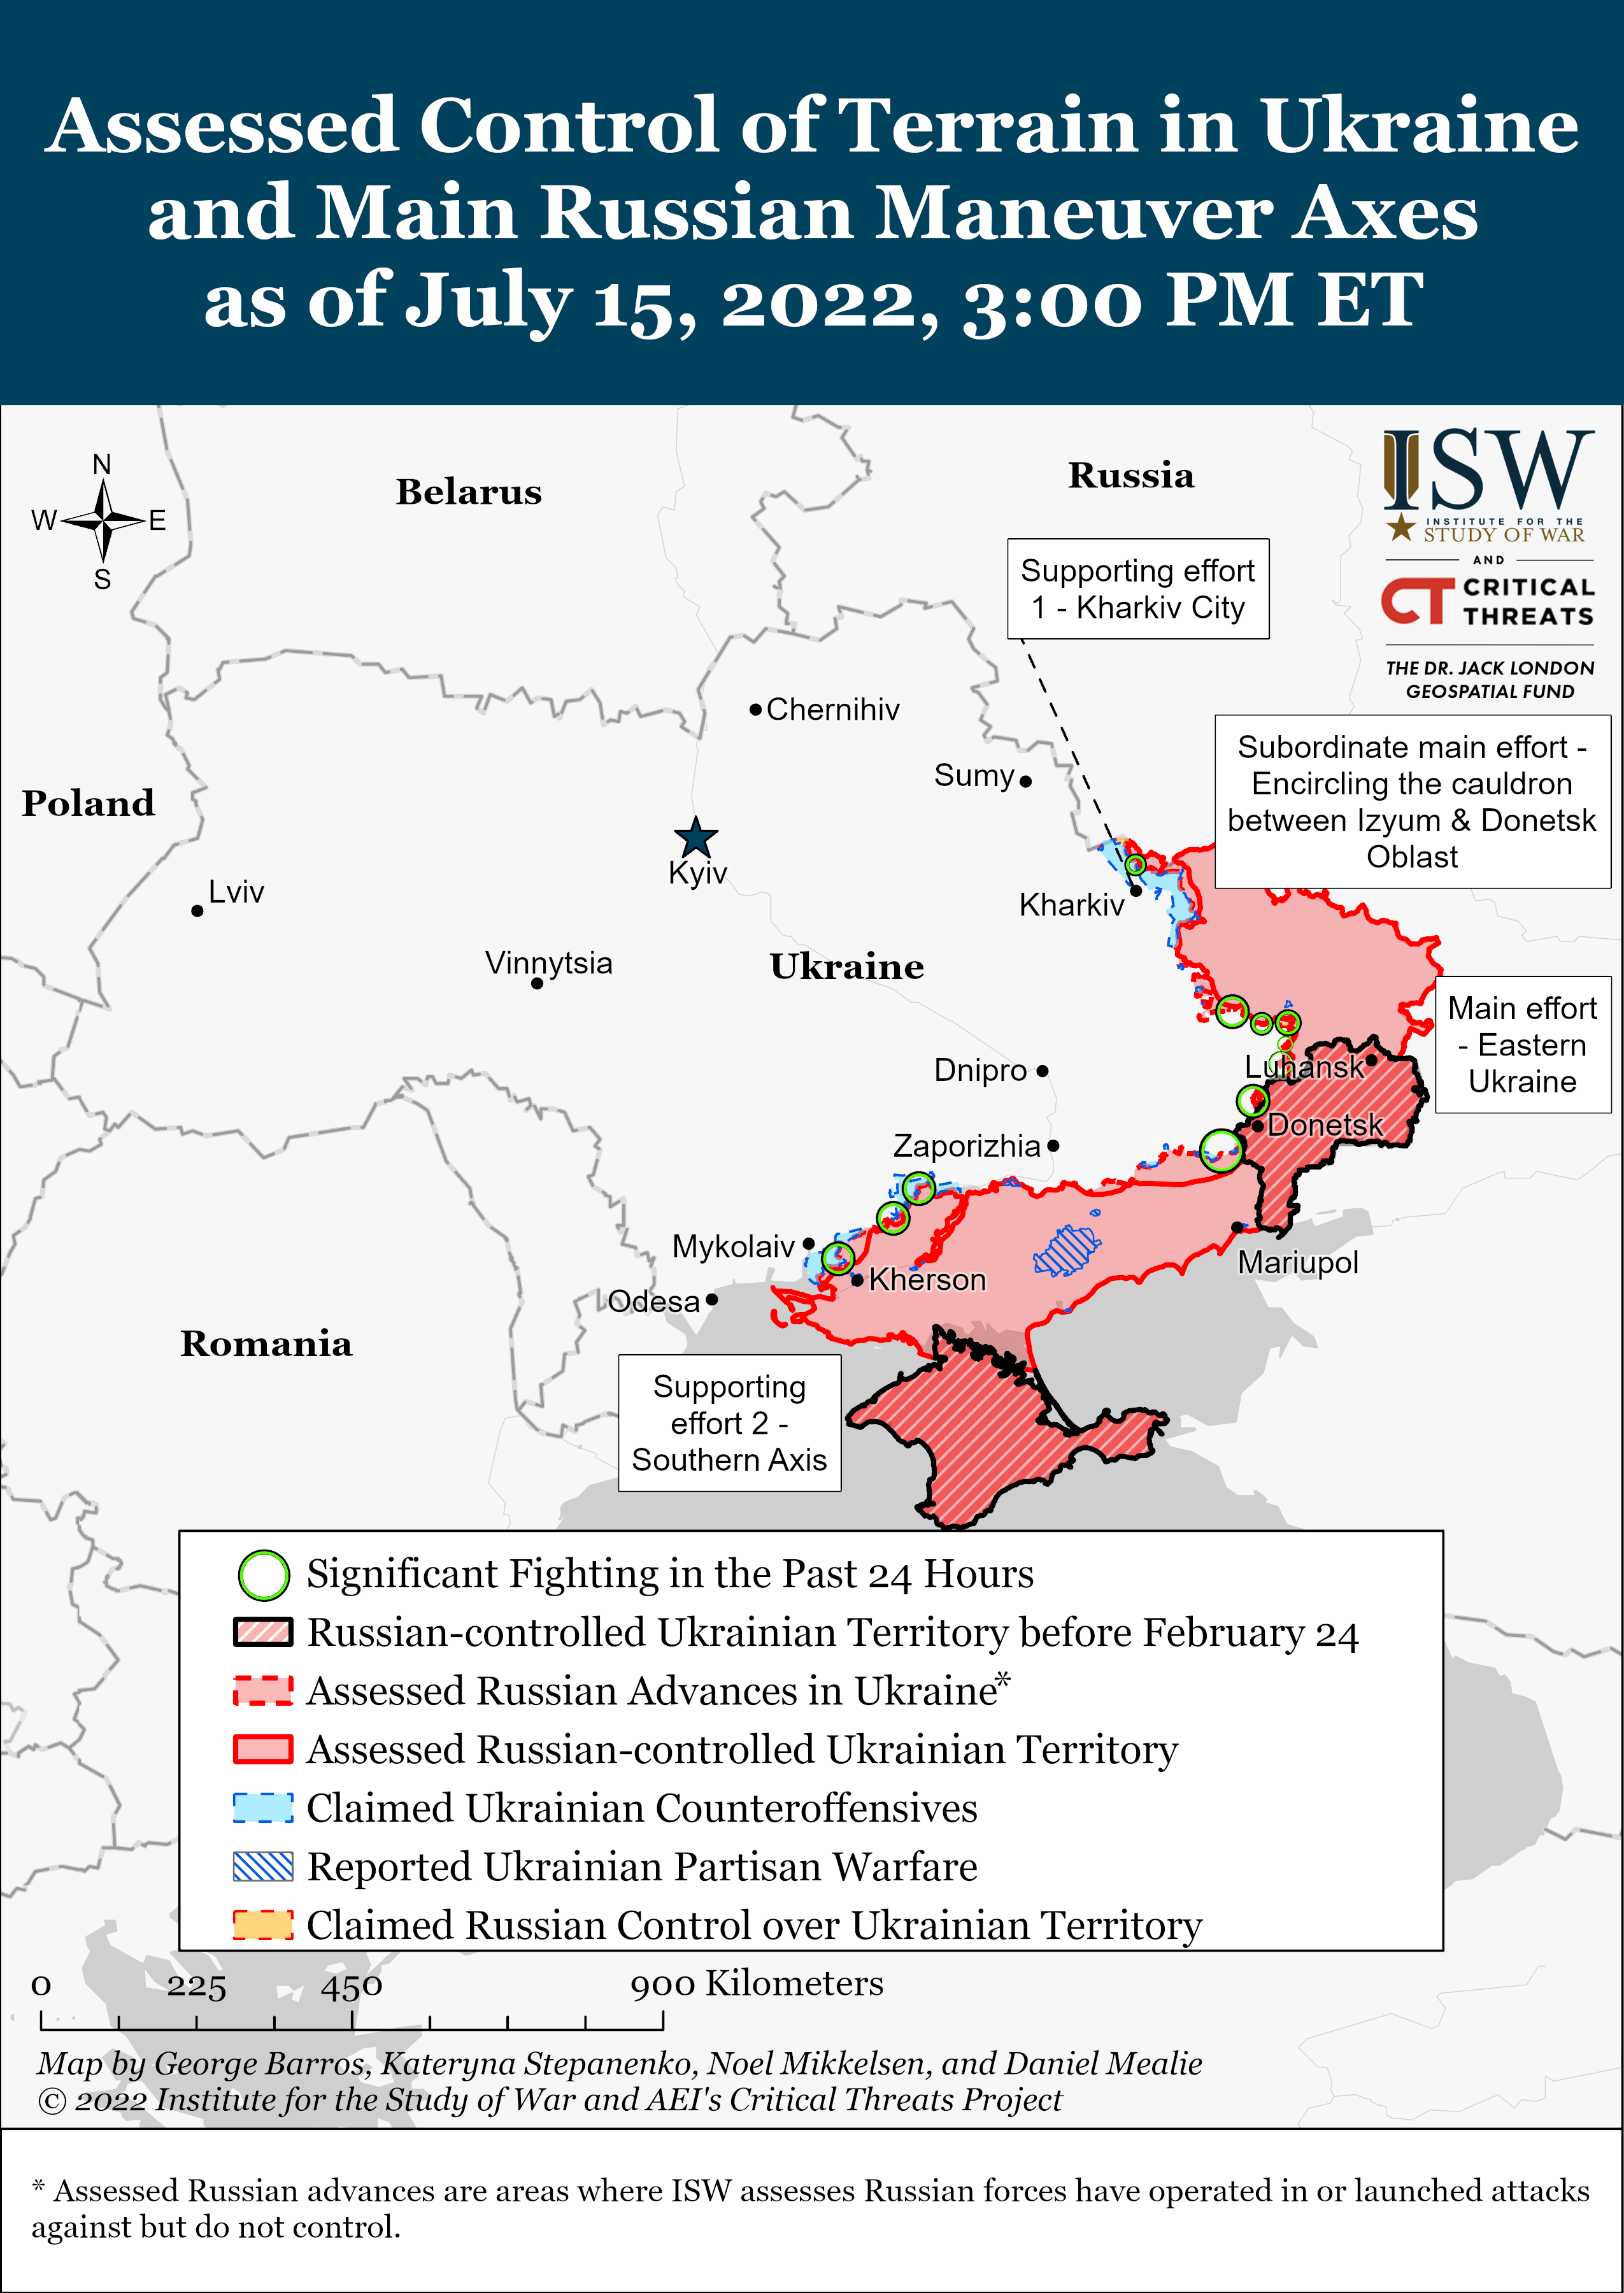 Wie ist der aktuelle Stand (15.07.22) der russischen Truppen in der Ukraine?